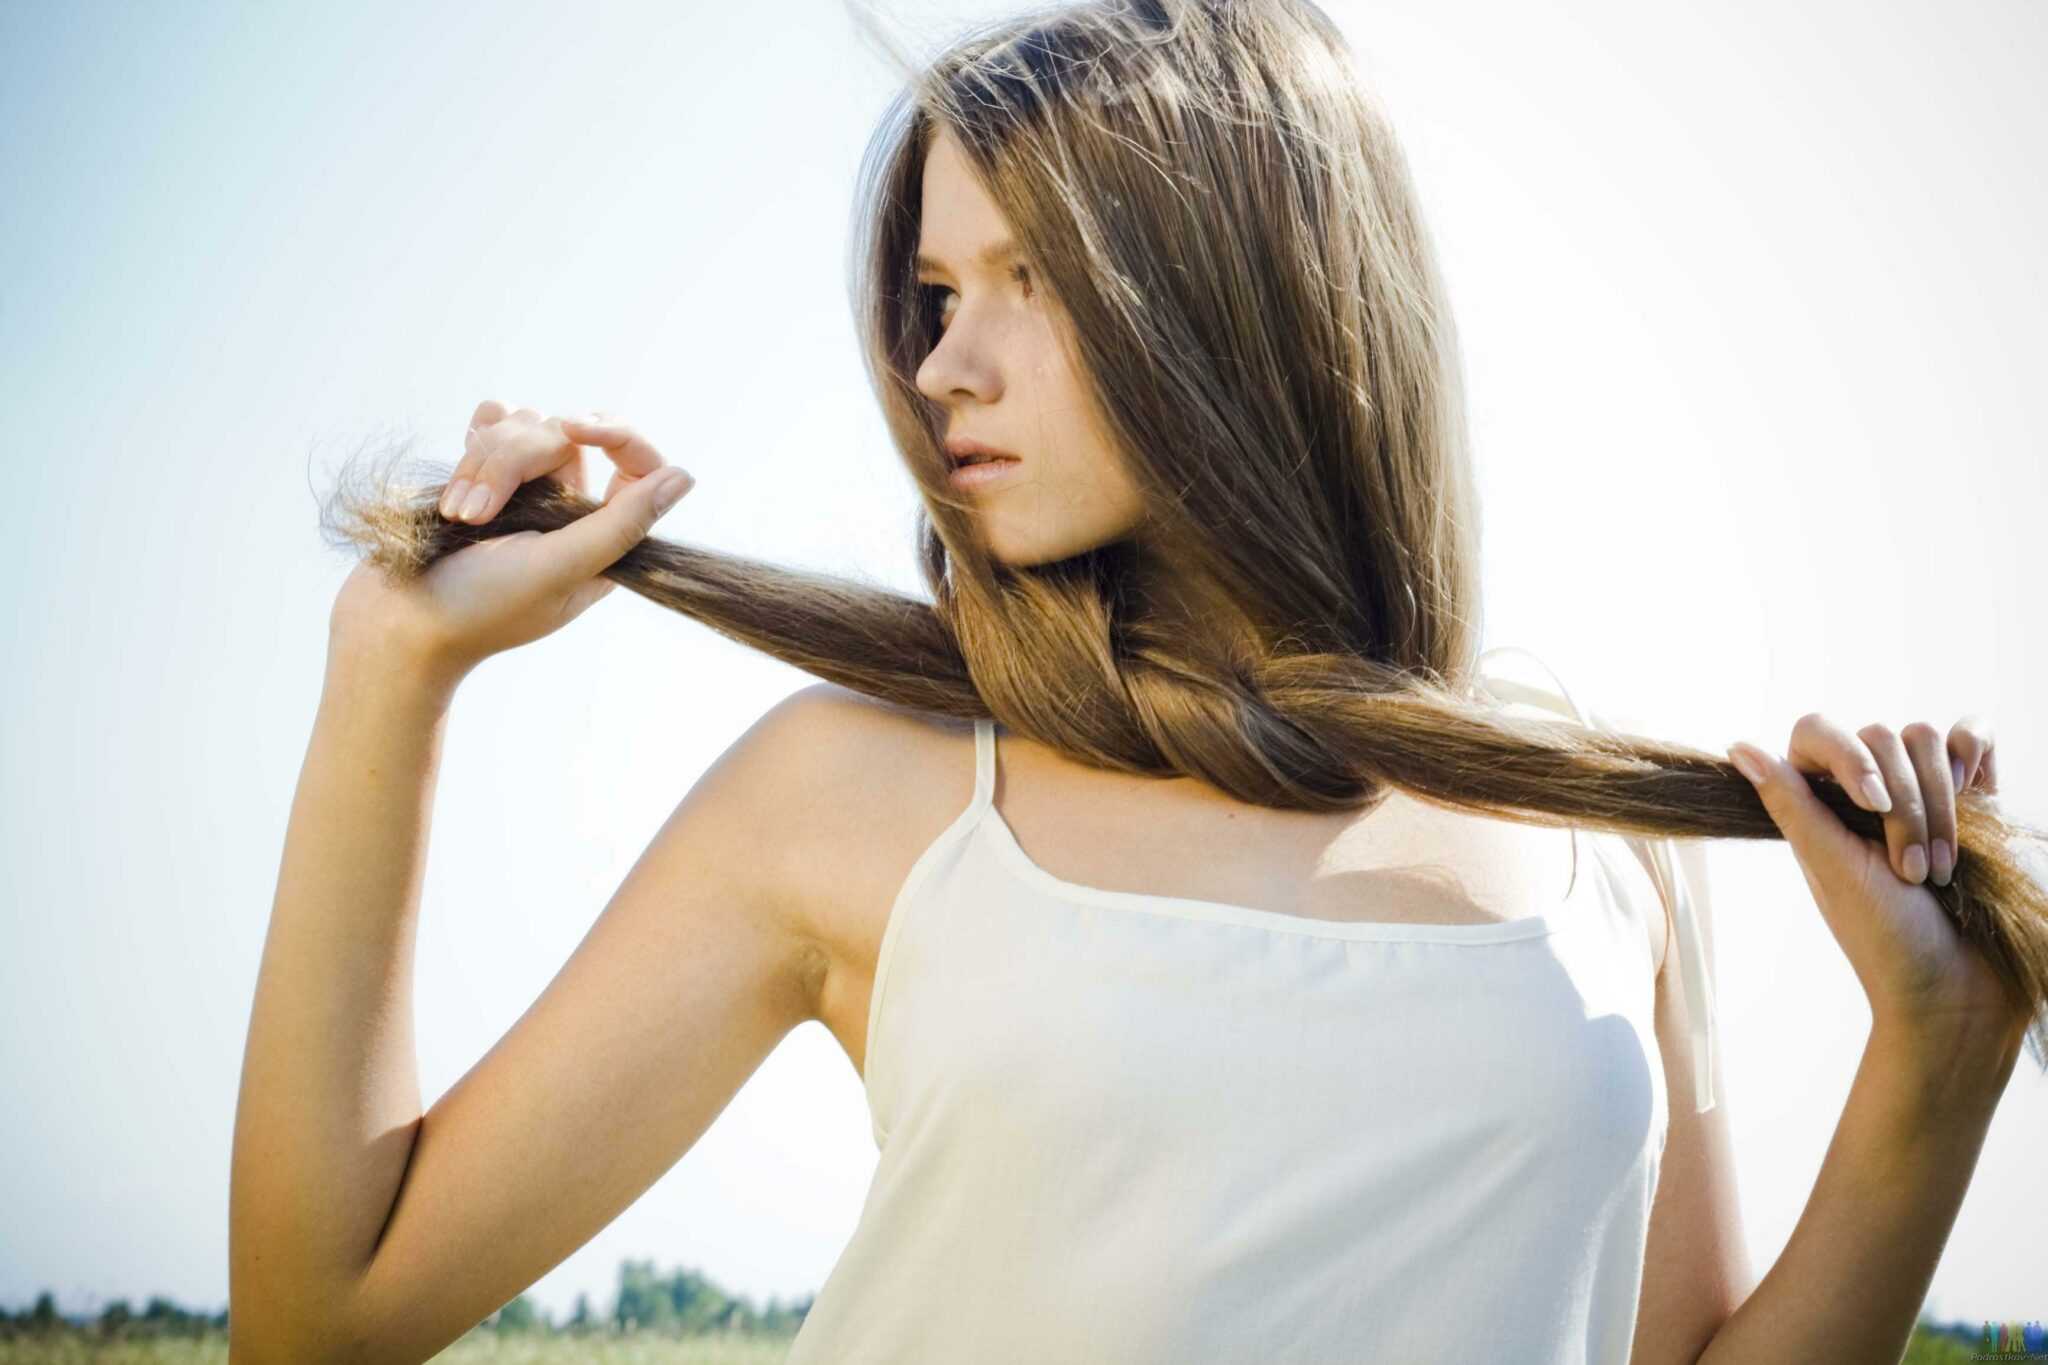 Как отрастить длинные волосы если они тонкие и секутся